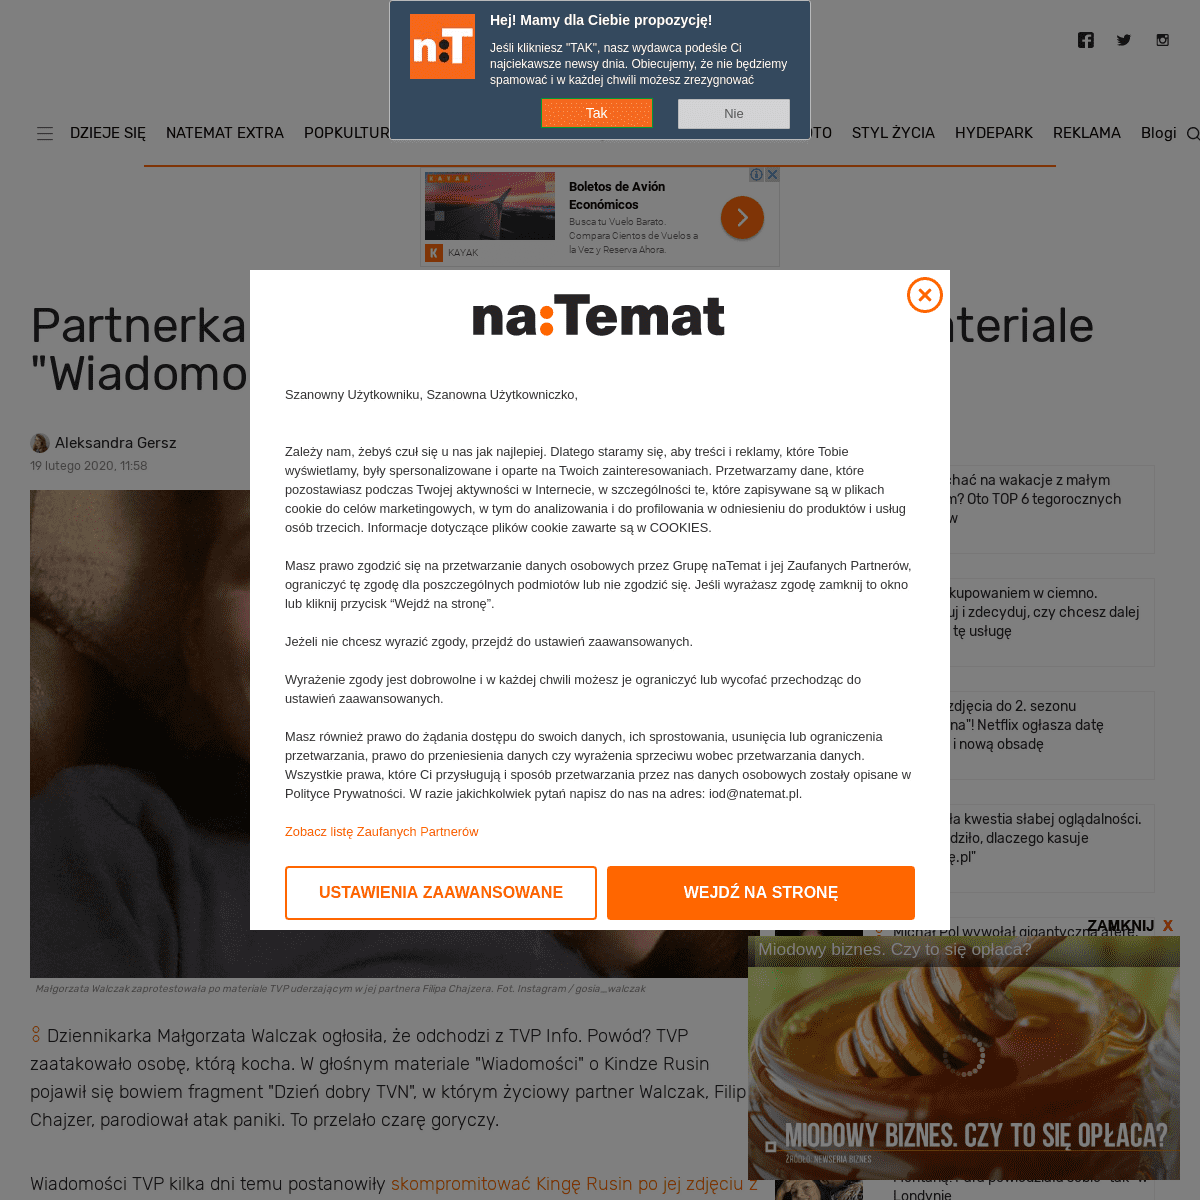 A complete backup of natemat.pl/299971